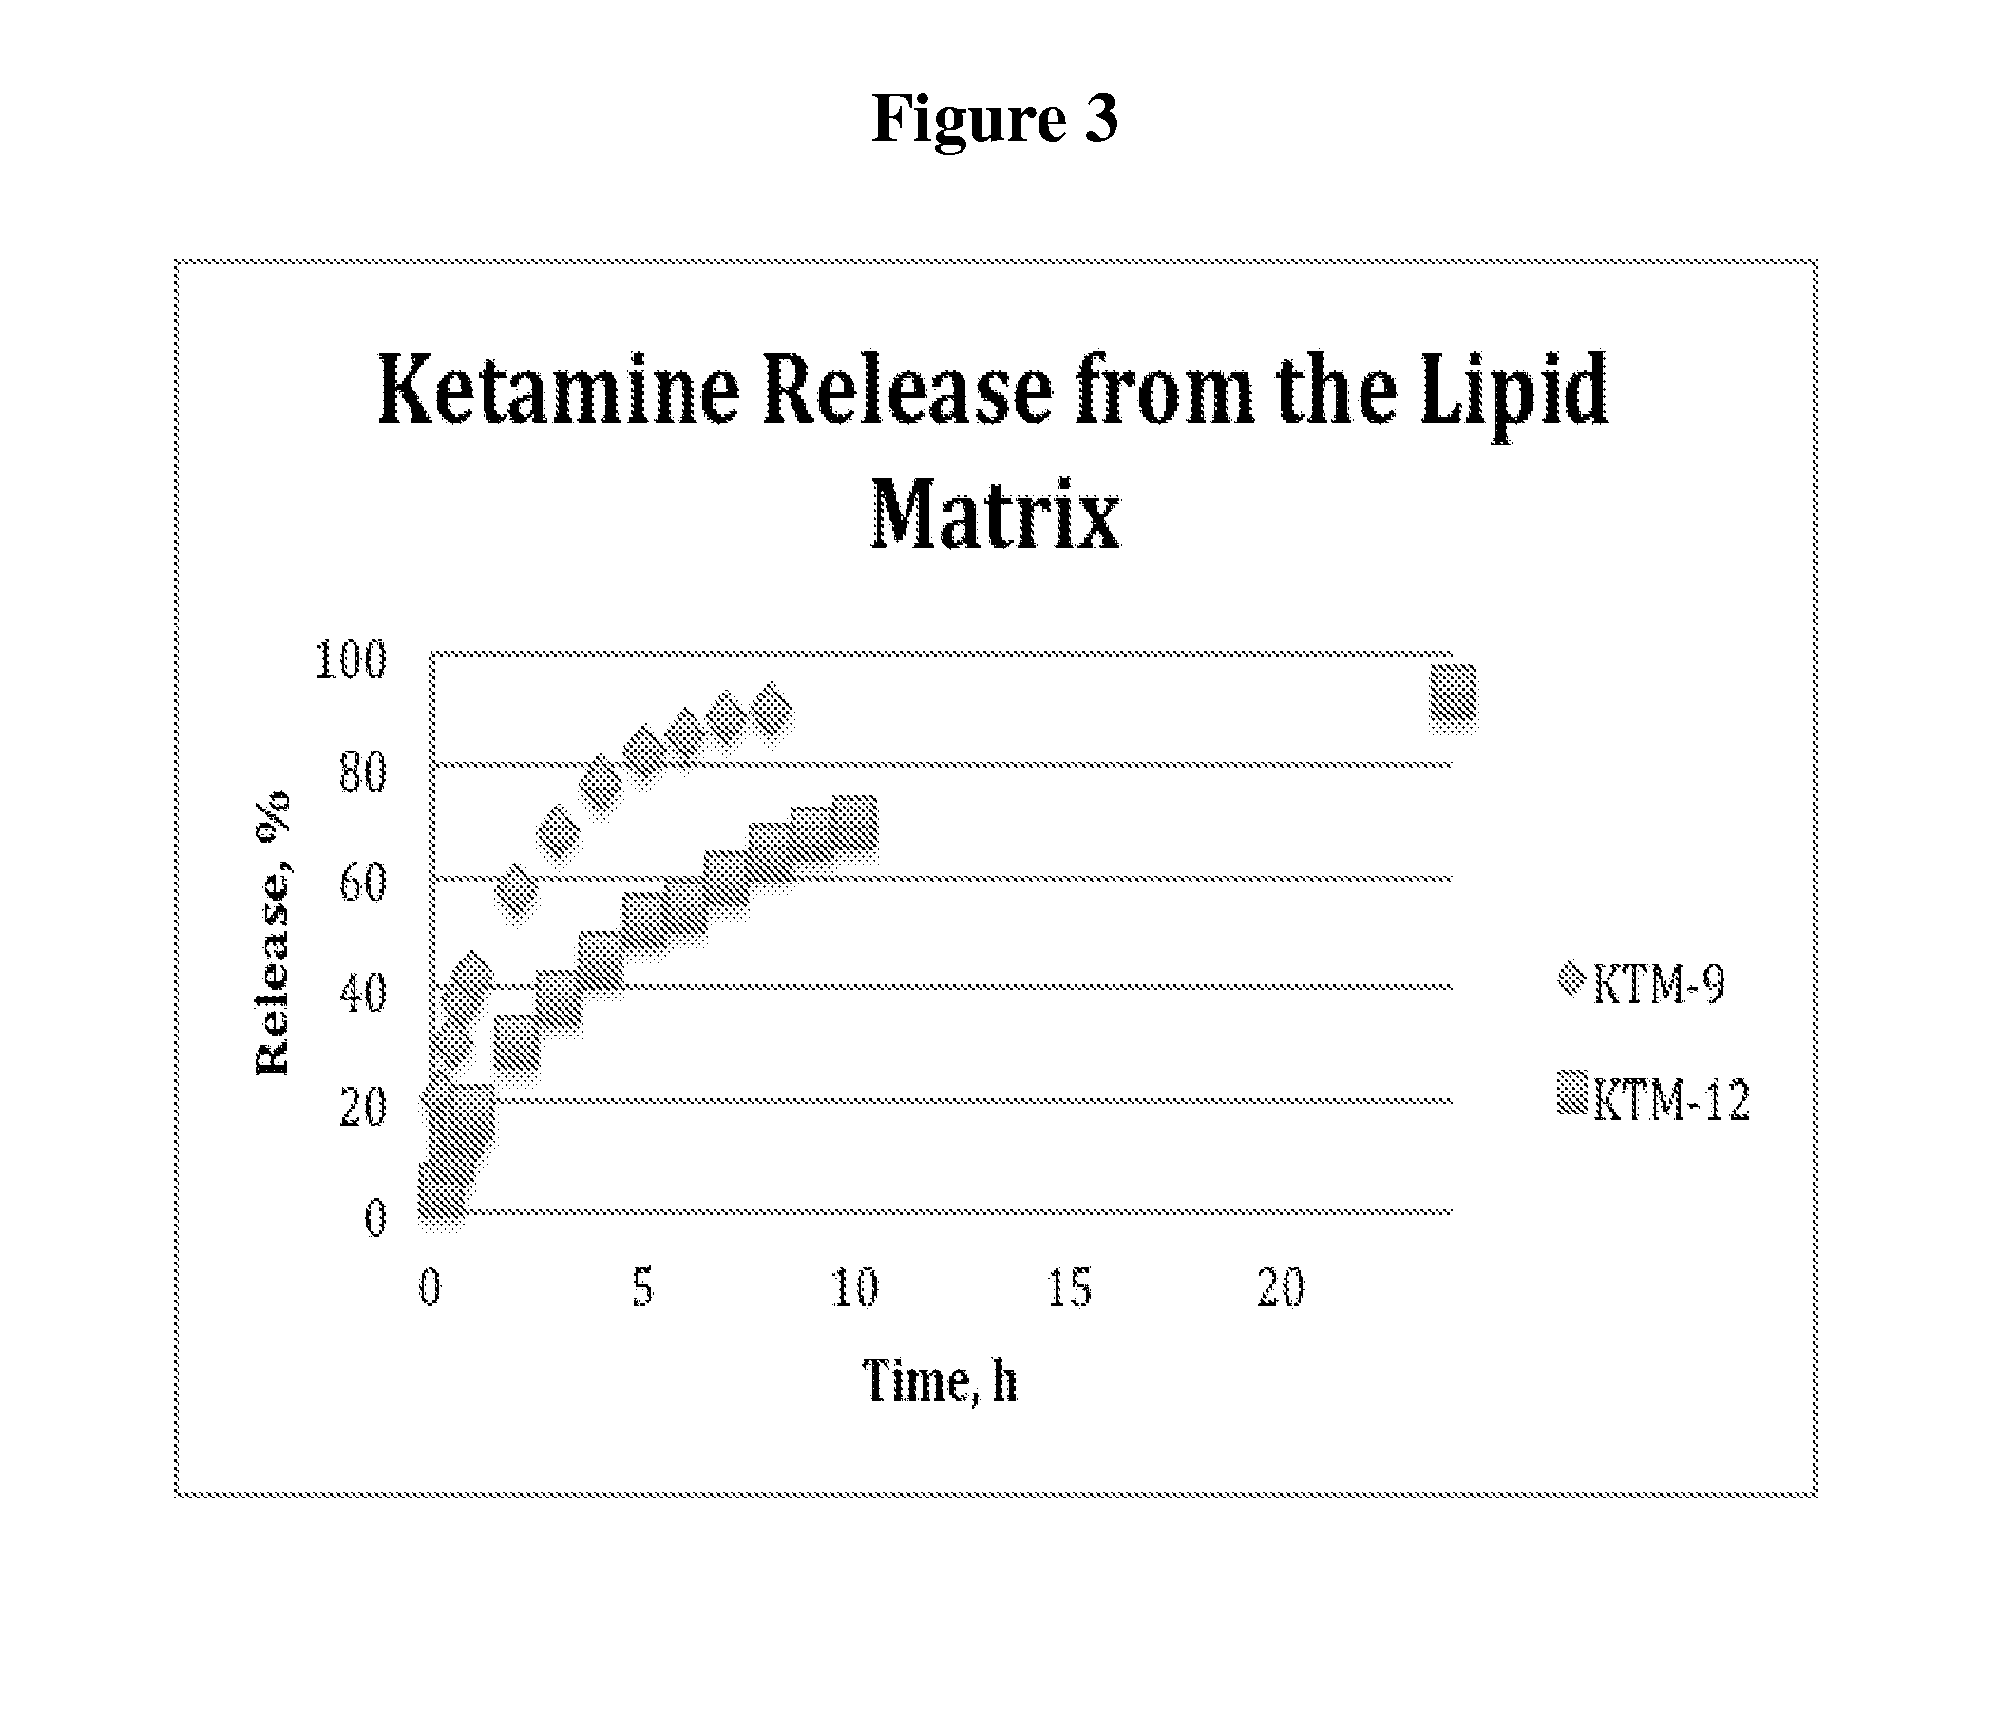 Single-layer oral dose of neuro-attenuating ketamine